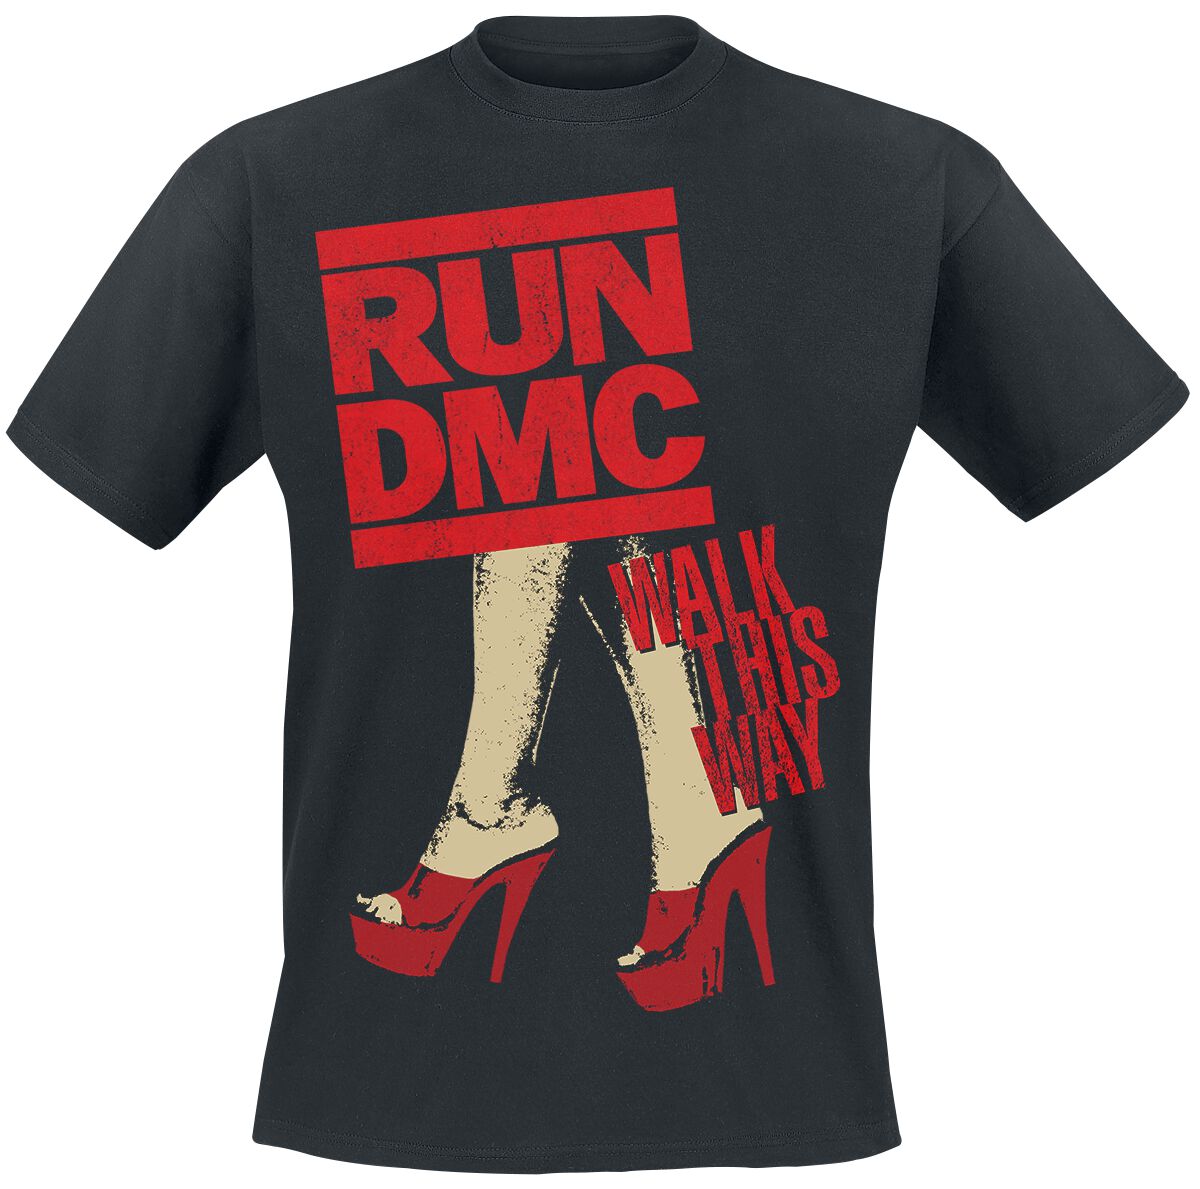 Run DMC T-Shirt - Walk This Way Legs - S bis L - für Männer - Größe M - schwarz  - Lizenziertes Merchandise!